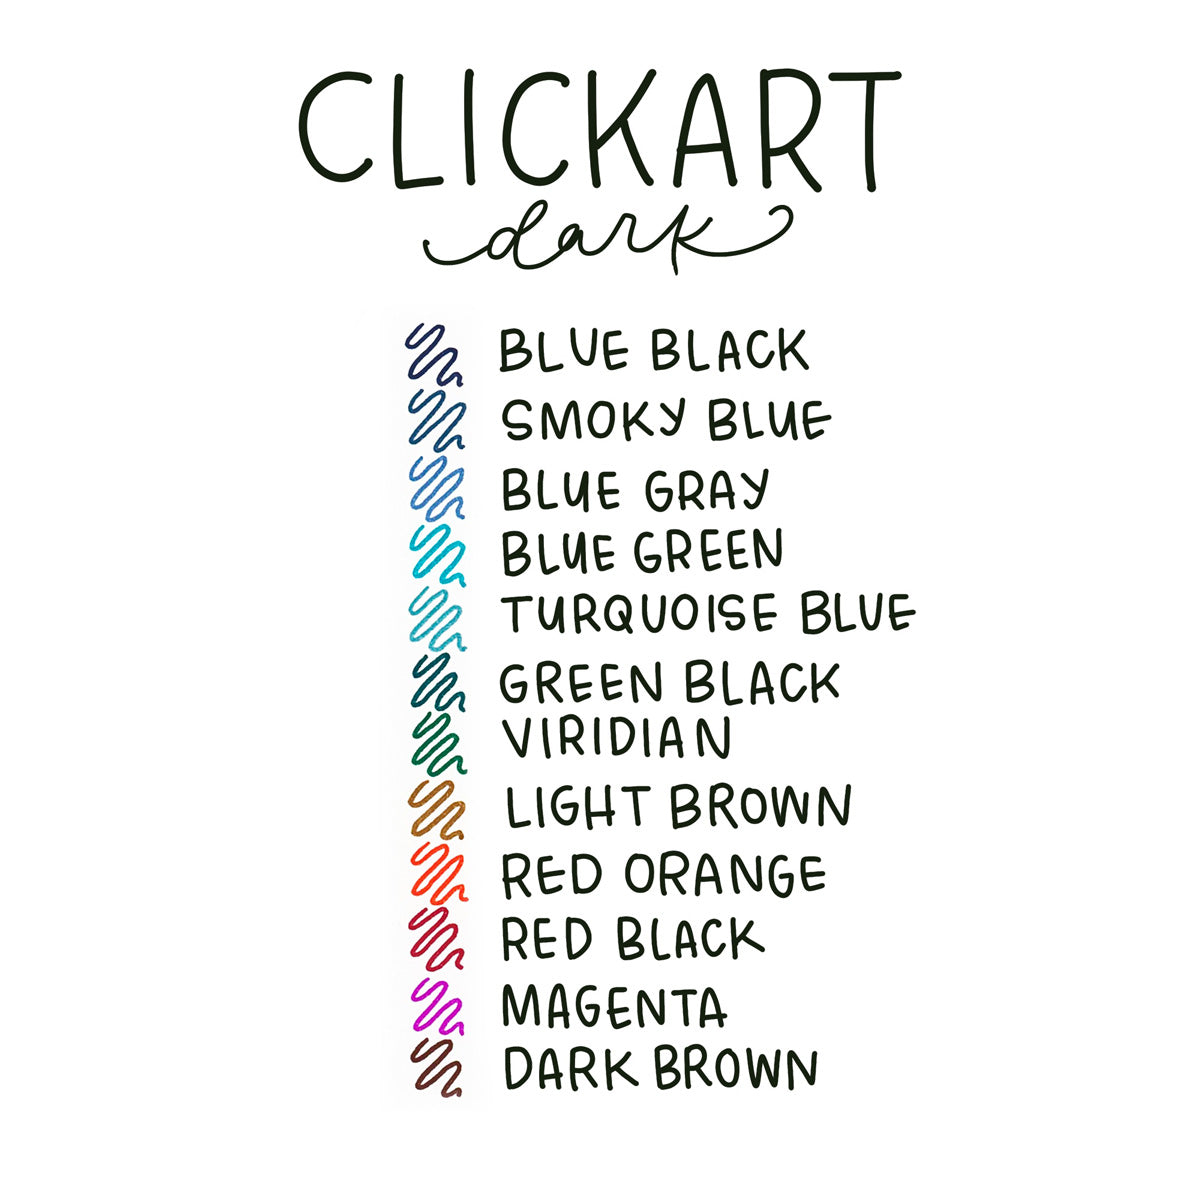 Clickart Retractable Markers – Penny Post, Alexandria VA